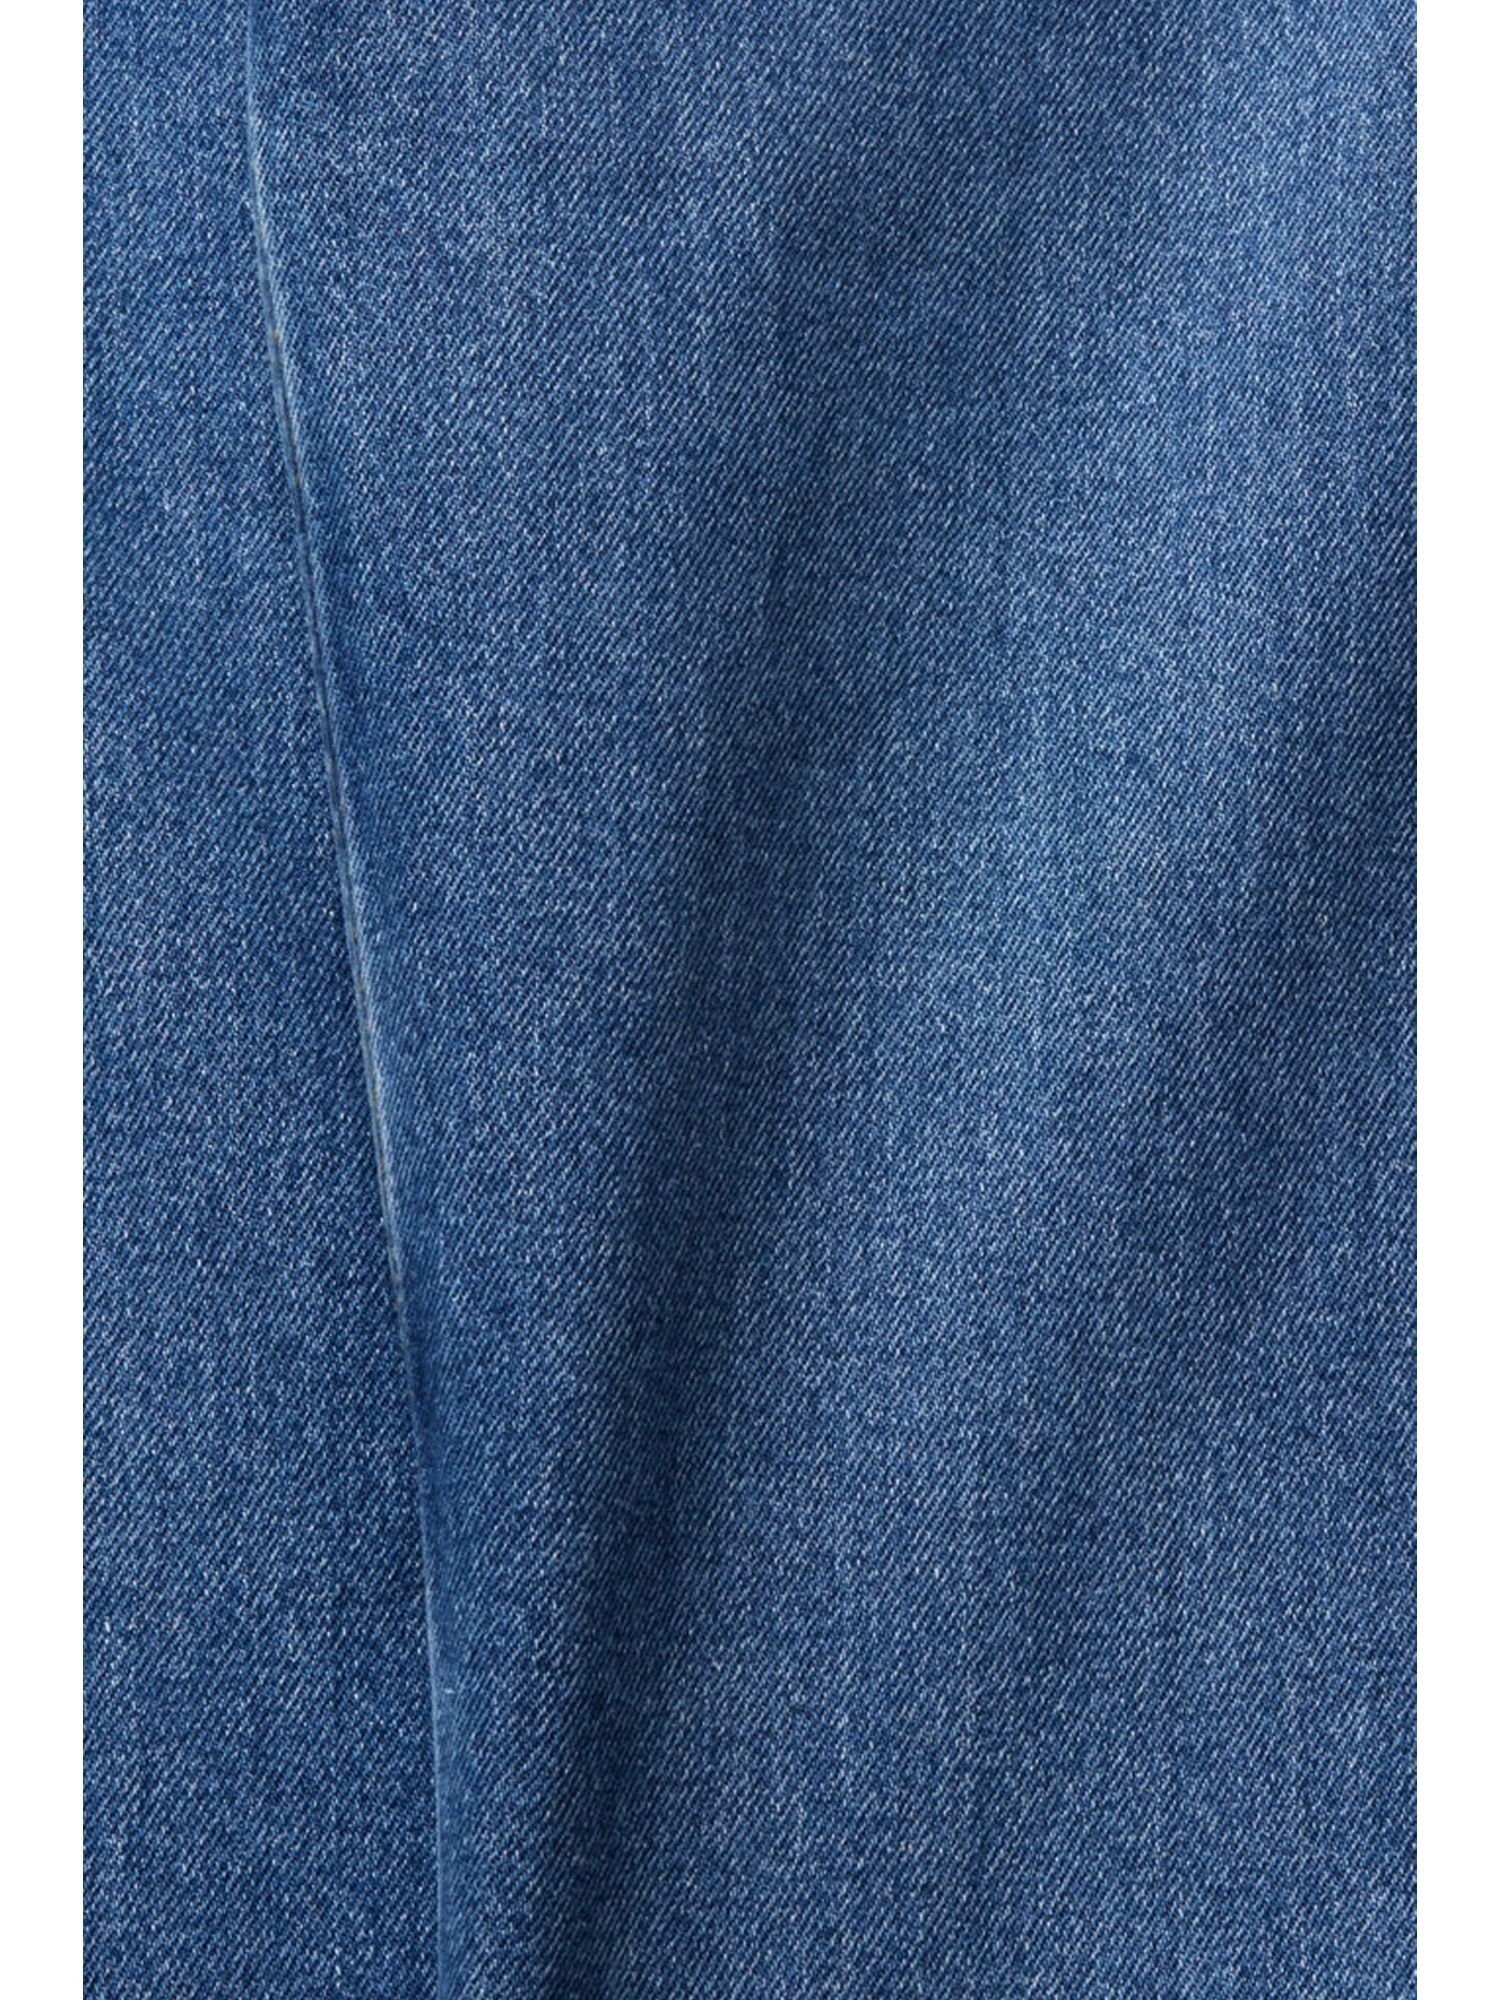 BLUE Bund hohem Beinverlauf WASHED MEDIUM und geradem 7/8-Jeans mit Jeans Esprit